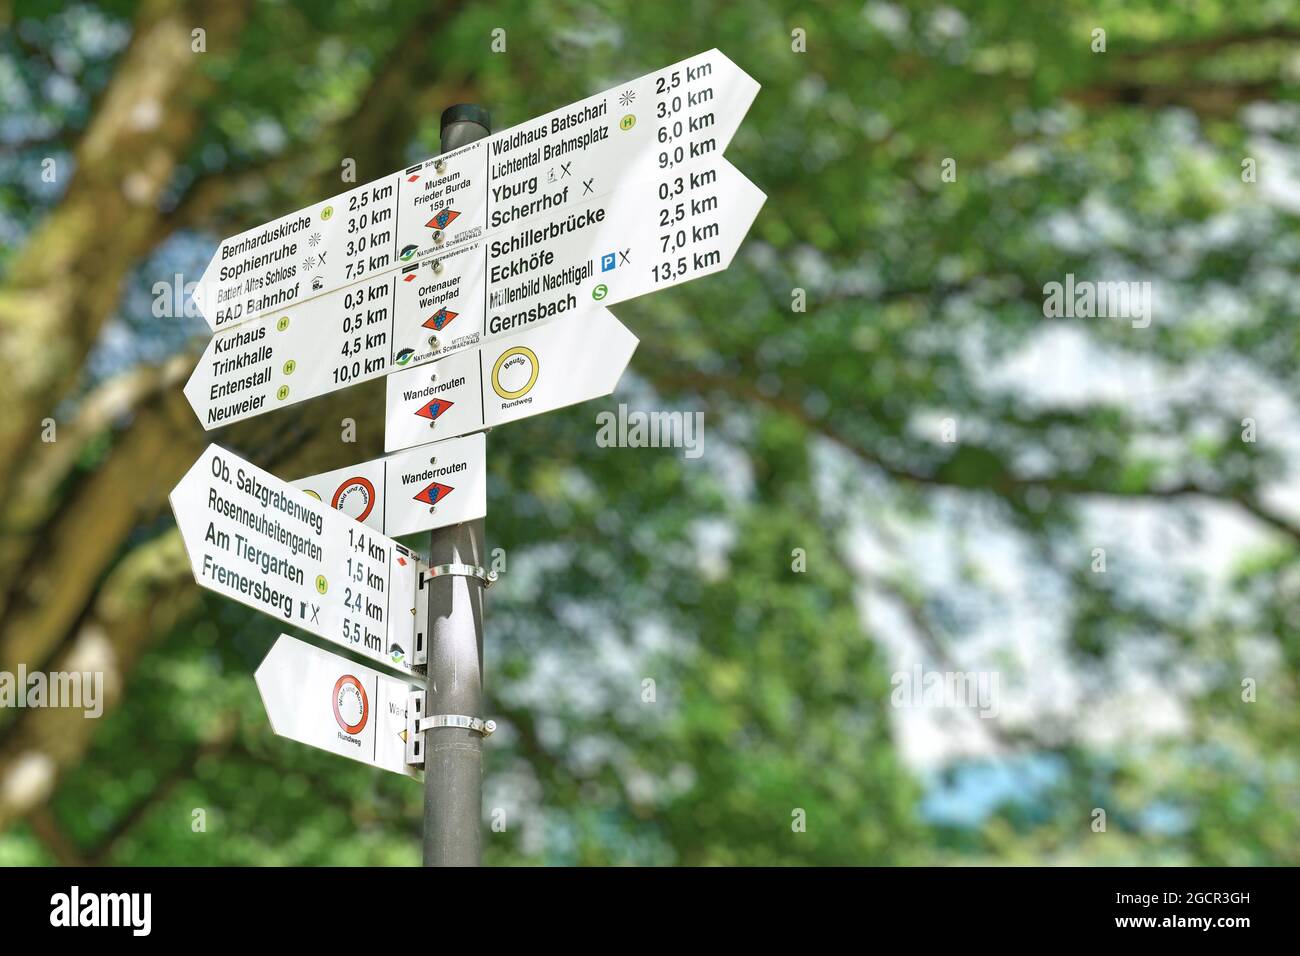 Baden-Baden, Allemagne - juillet 2021: Panneau indiquant les directions et la distance de divers sites touristiques lieu d'intérêt dans le patrimoine mondial Banque D'Images